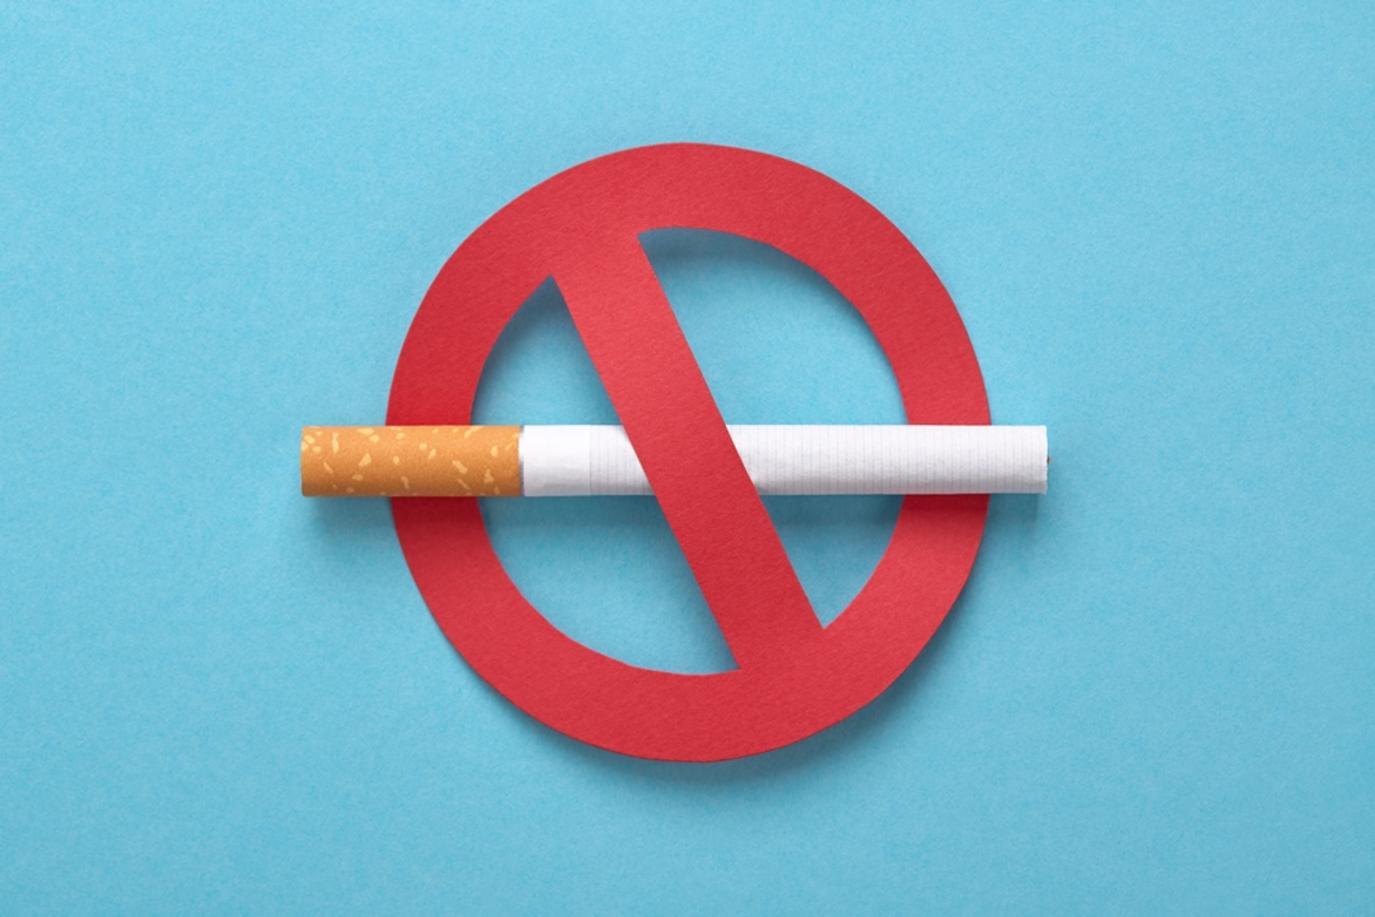 دولة عربية تطبق أكبر عقوبة للتدخين
